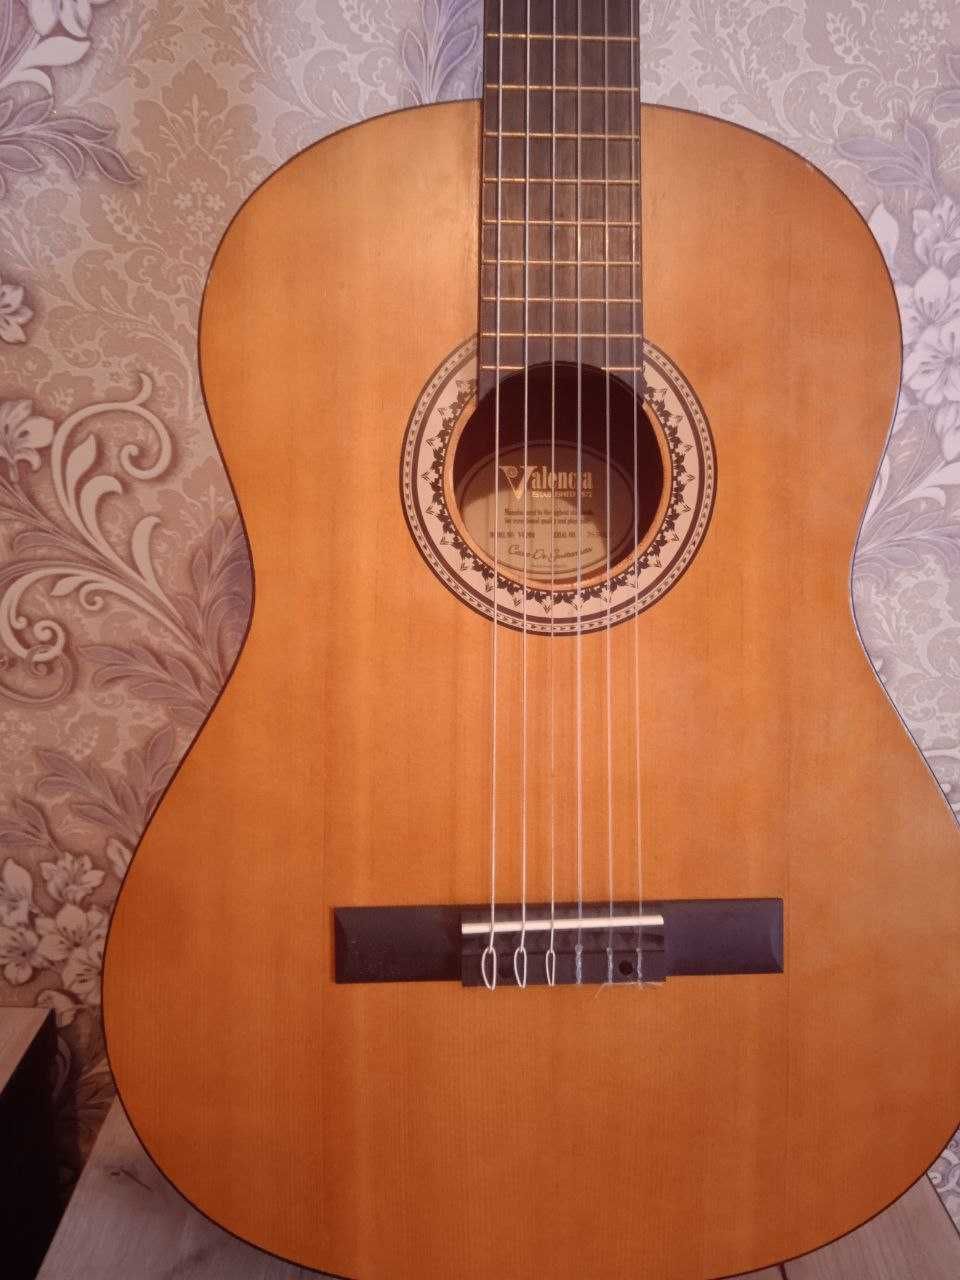 Продается гитара Valensiya VC204